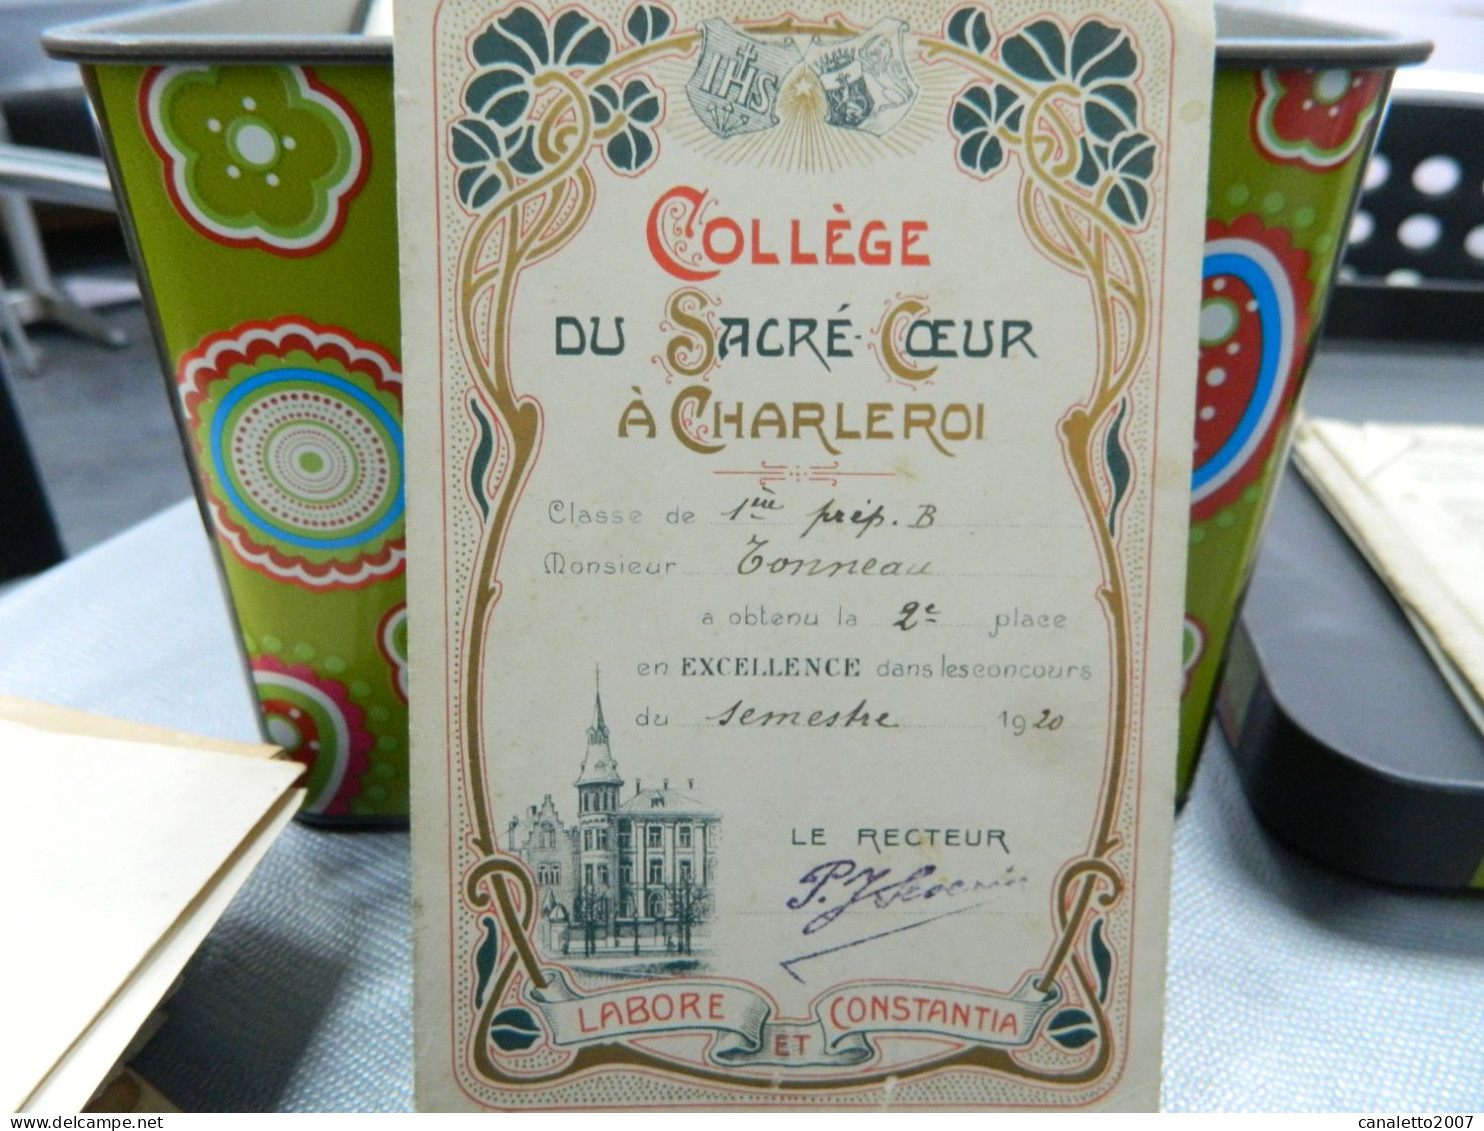 CHARLEROI: COLLEGE DU SACRE COEUR A CHARLEROI CARTE D'EXCELLENCE  DE M.TONNEAU EN 1920-DECOR ART NOUVEAU - Diplomas Y Calificaciones Escolares